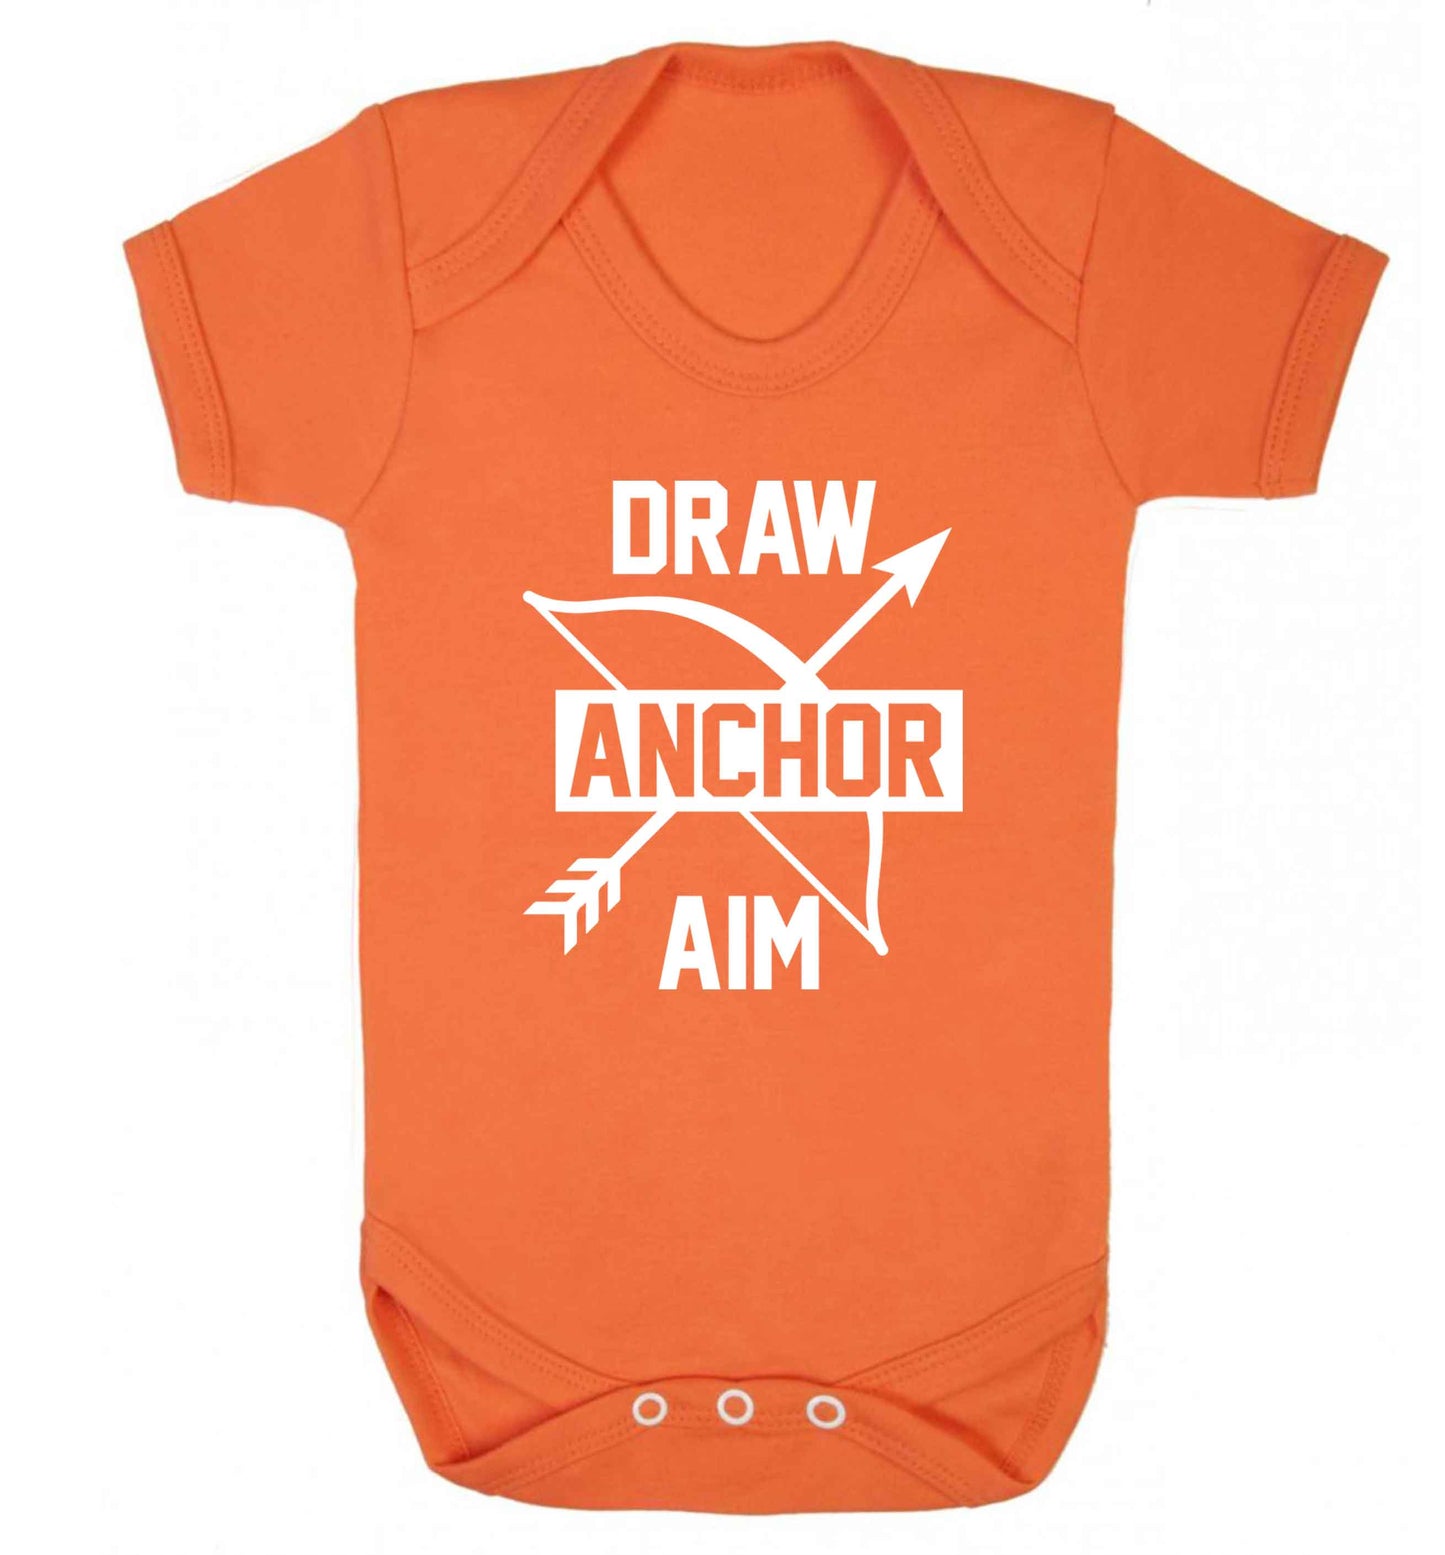 Draw anchor aim Baby Vest orange 18-24 months